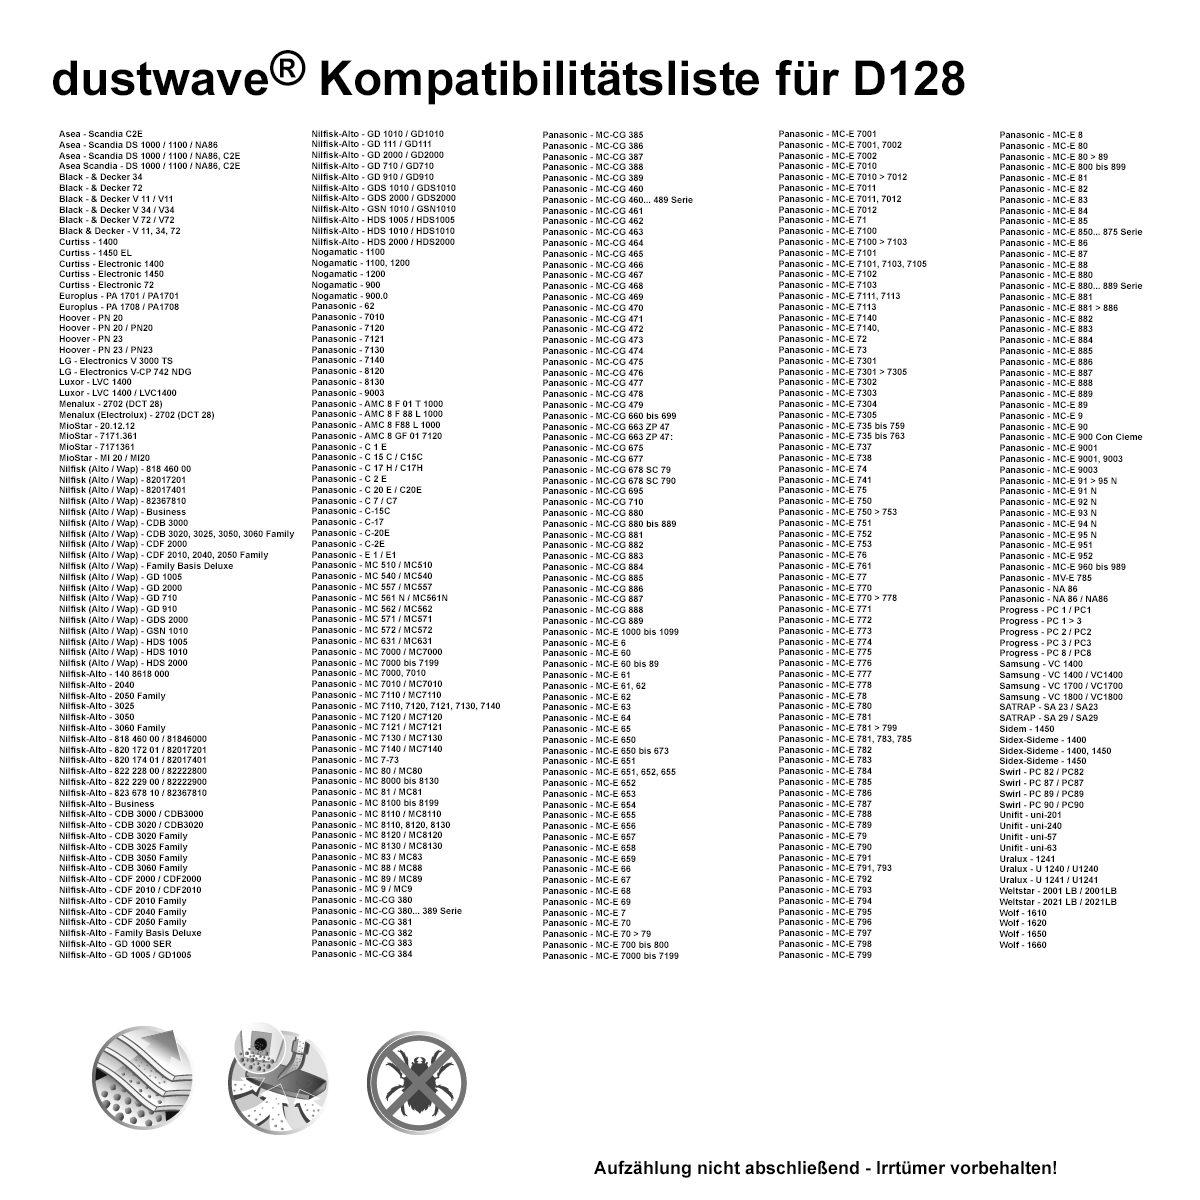 Dustwave® 1 Staubsaugerbeutel für Base BA 2702 - hocheffizient mit Hygieneverschluss - Made in Germany